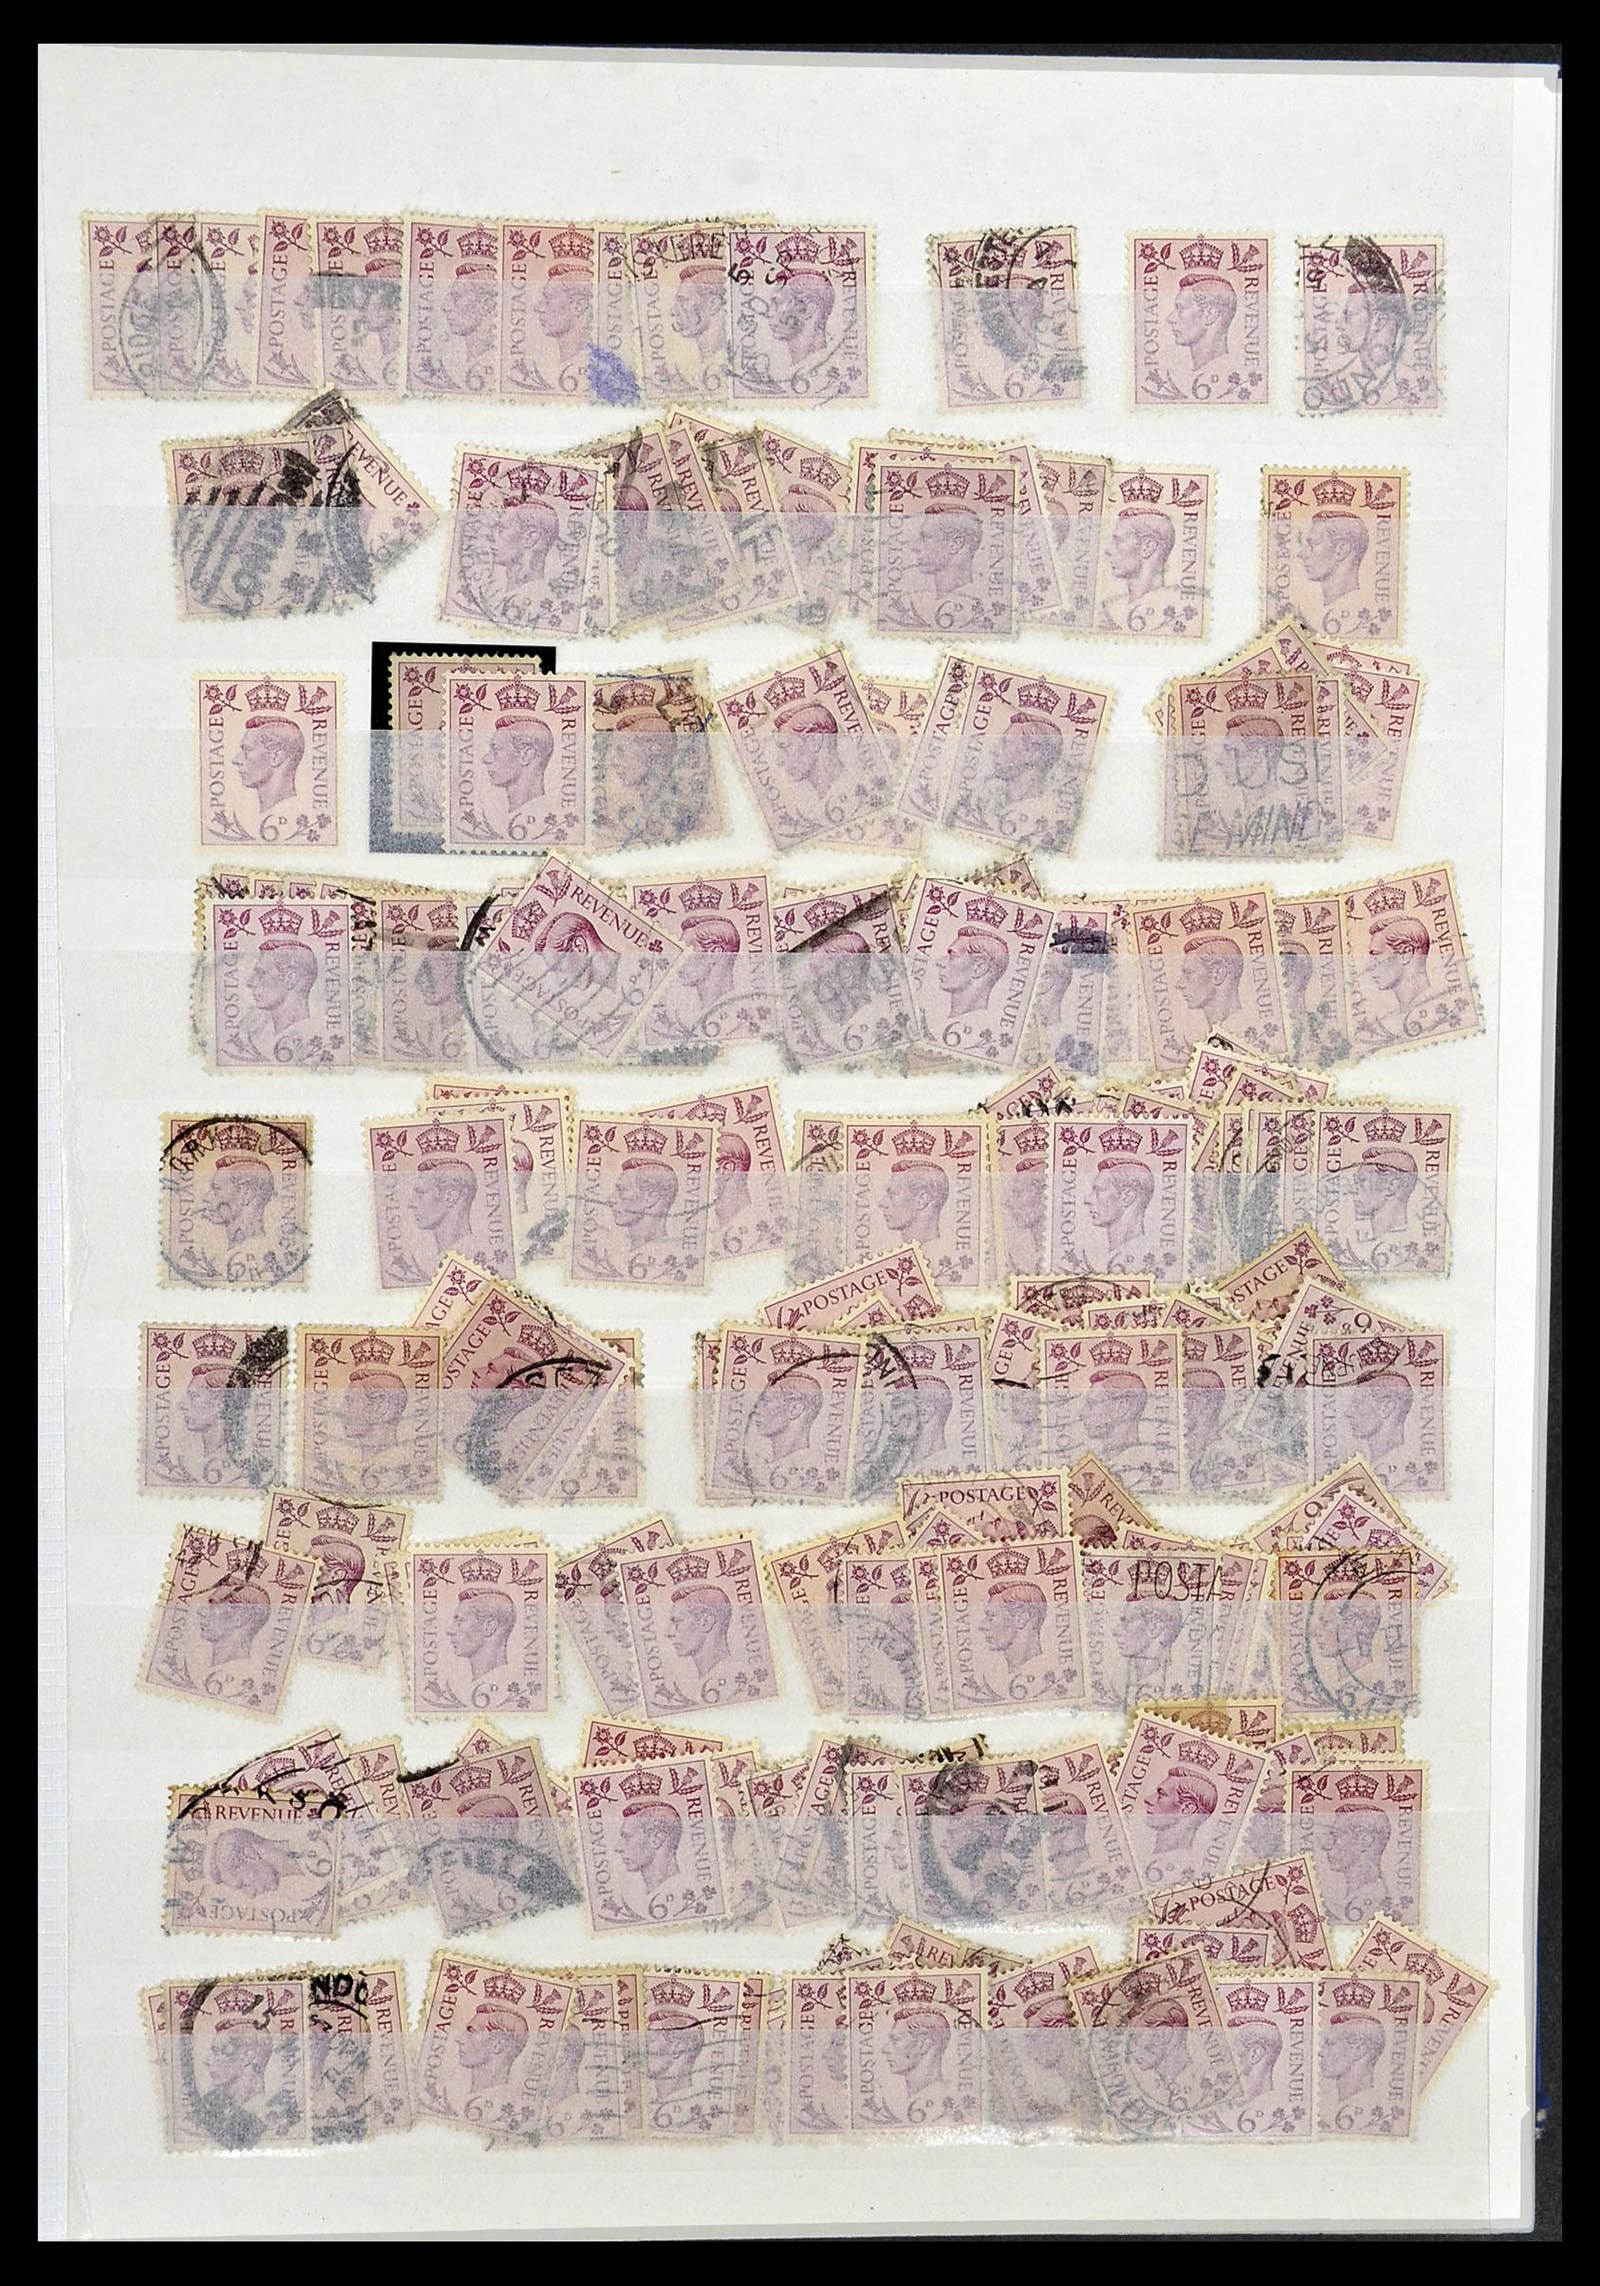 34368 037 - Postzegelverzameling 34368 Engeland uitzoekpartij 1858-1990.